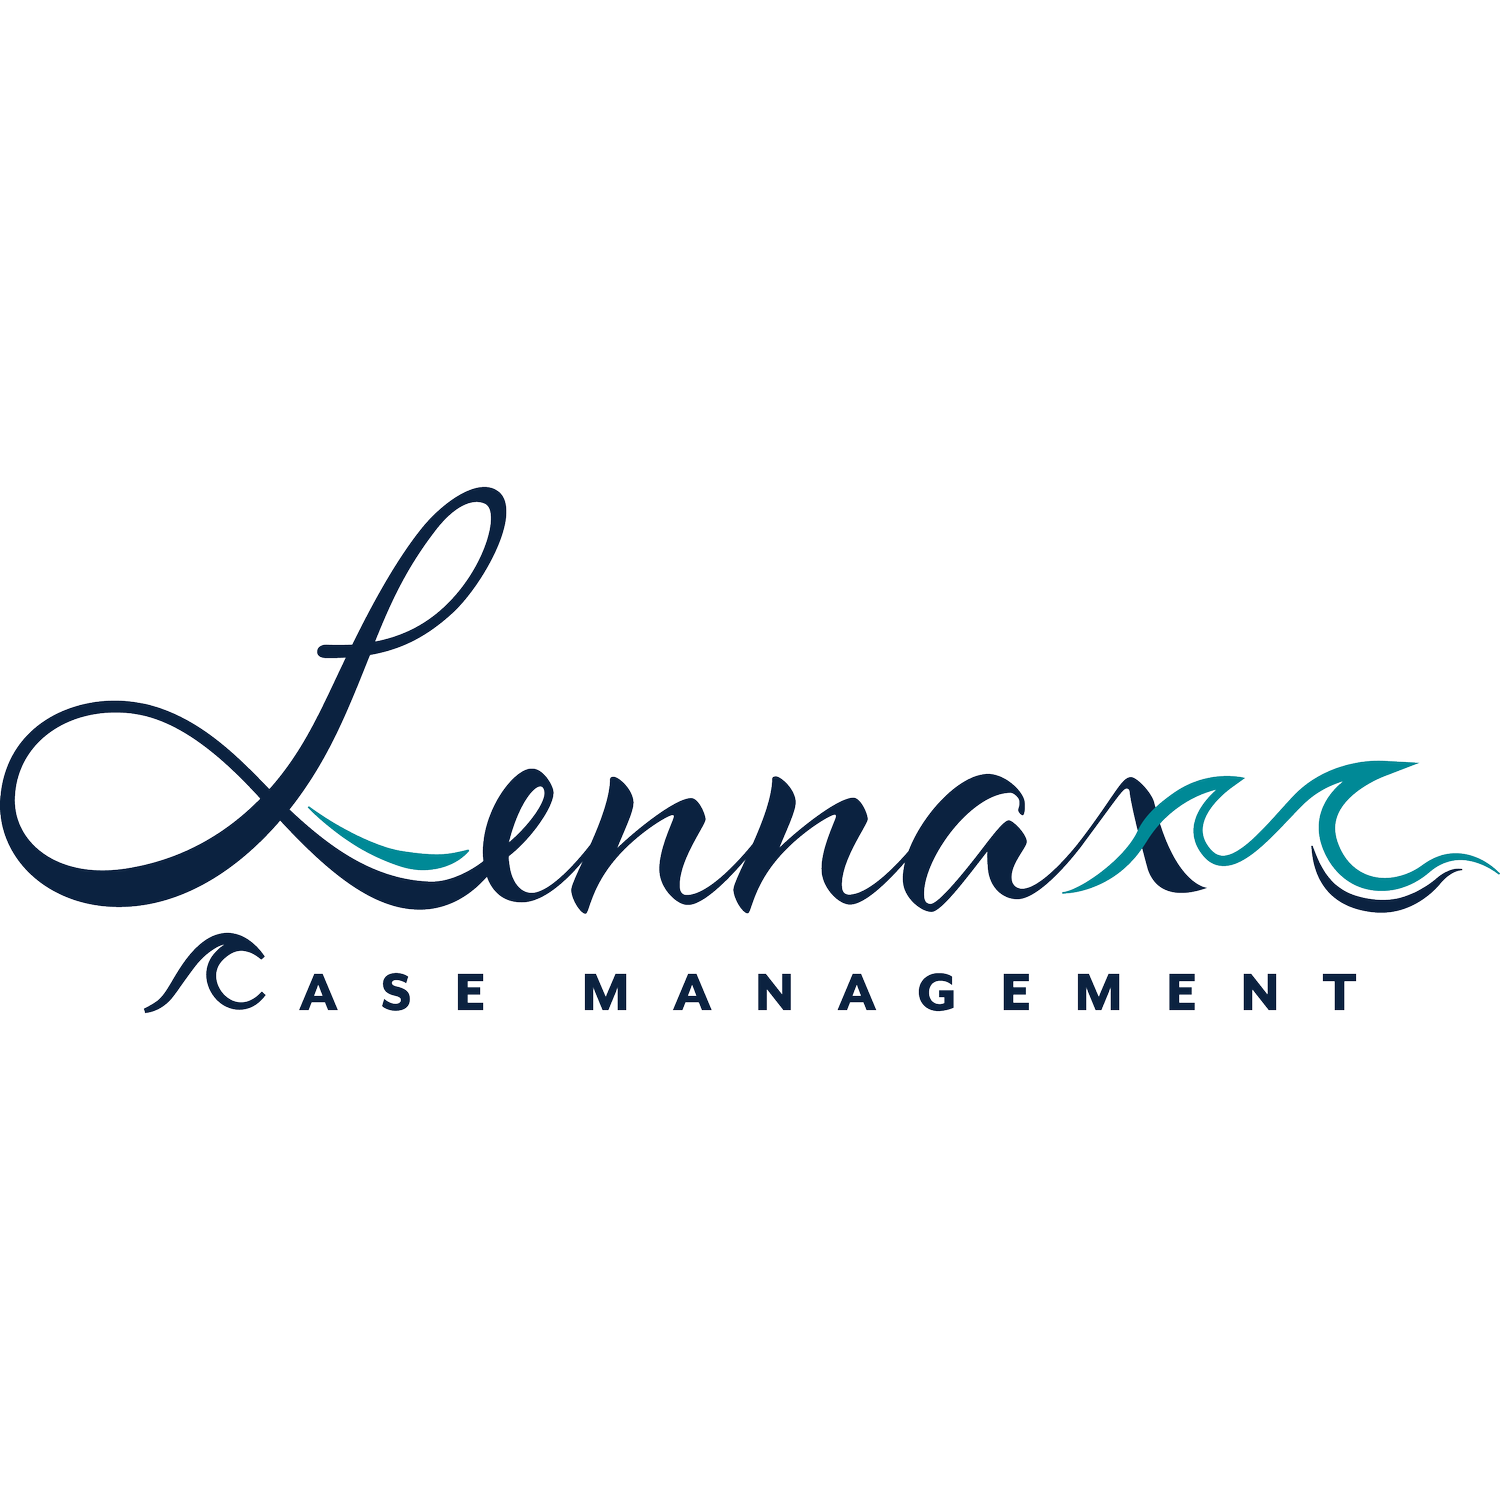 Lennax Case Management